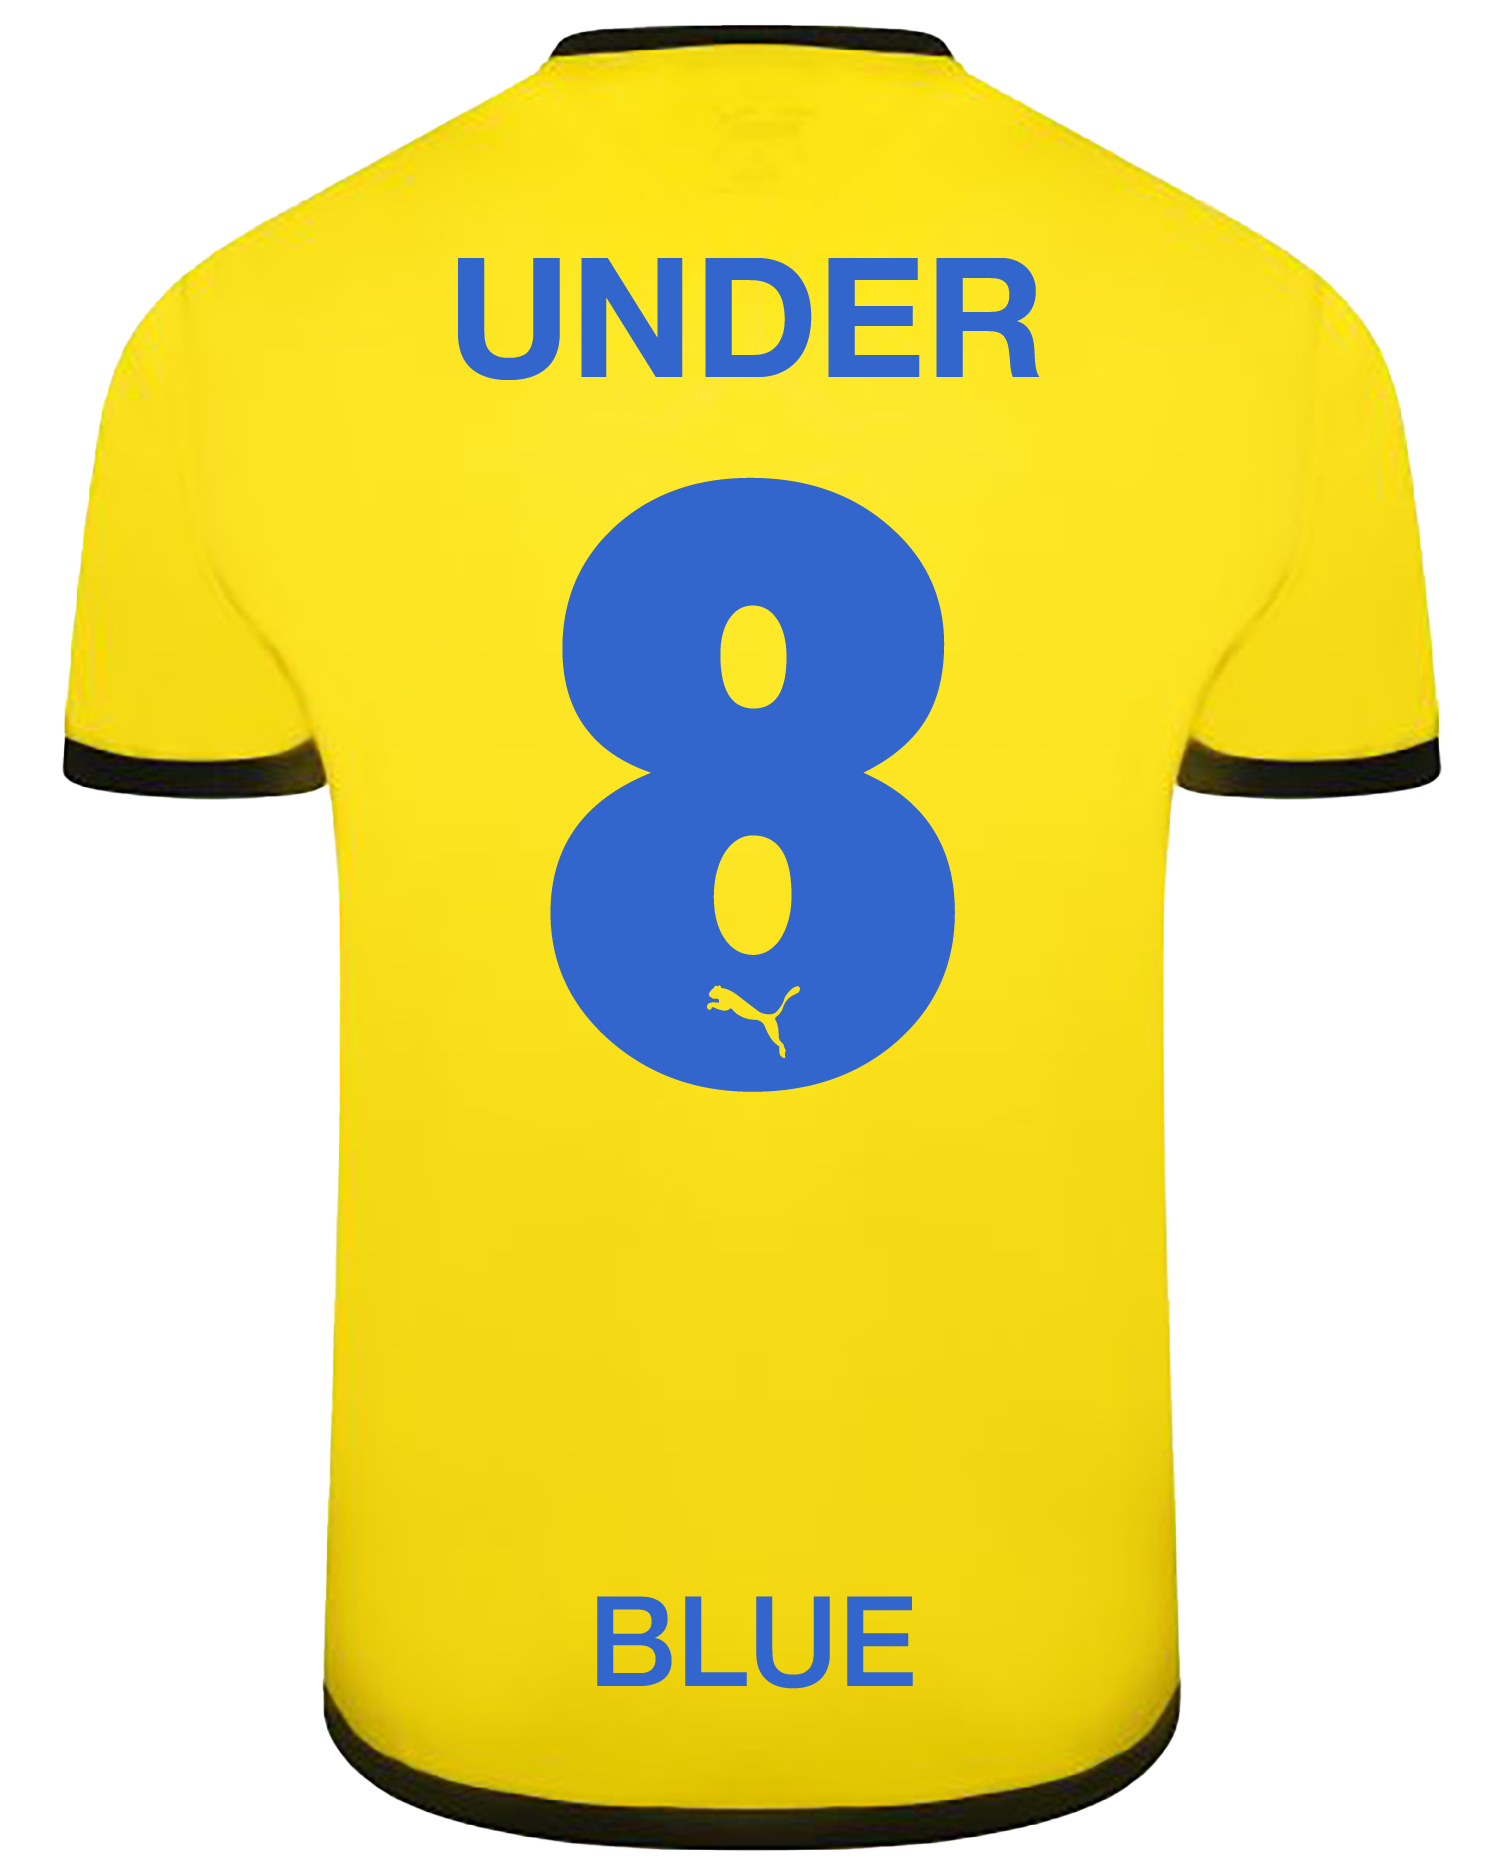 Under 8 (Blue)